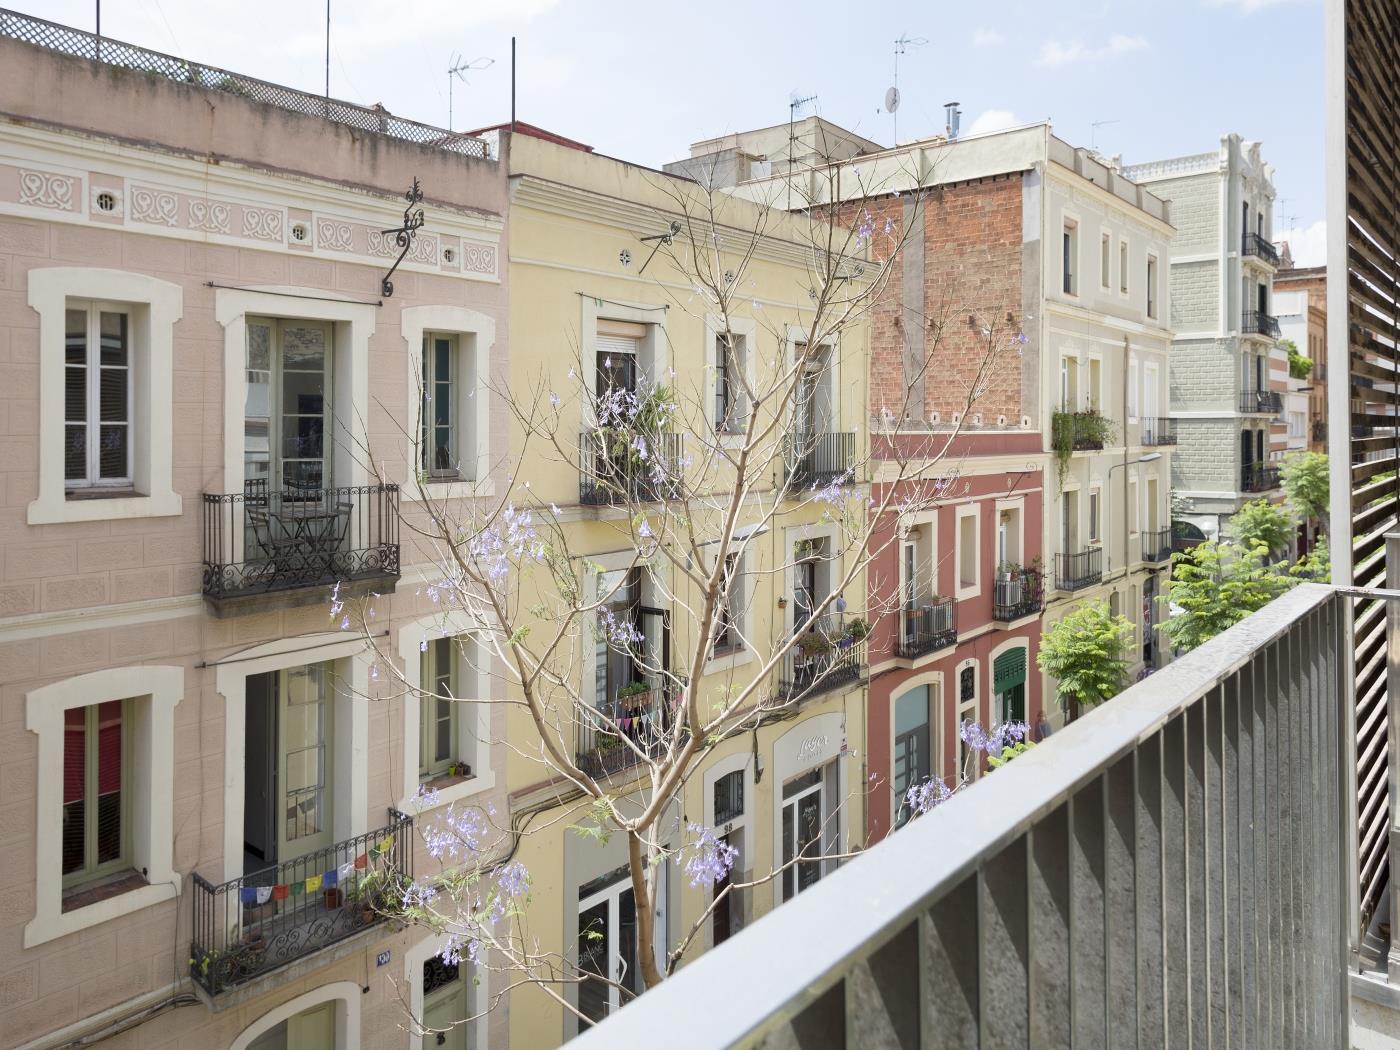 Wohnung mit privater Terrasse und Schwimmbad - My Space Barcelona Appartementen